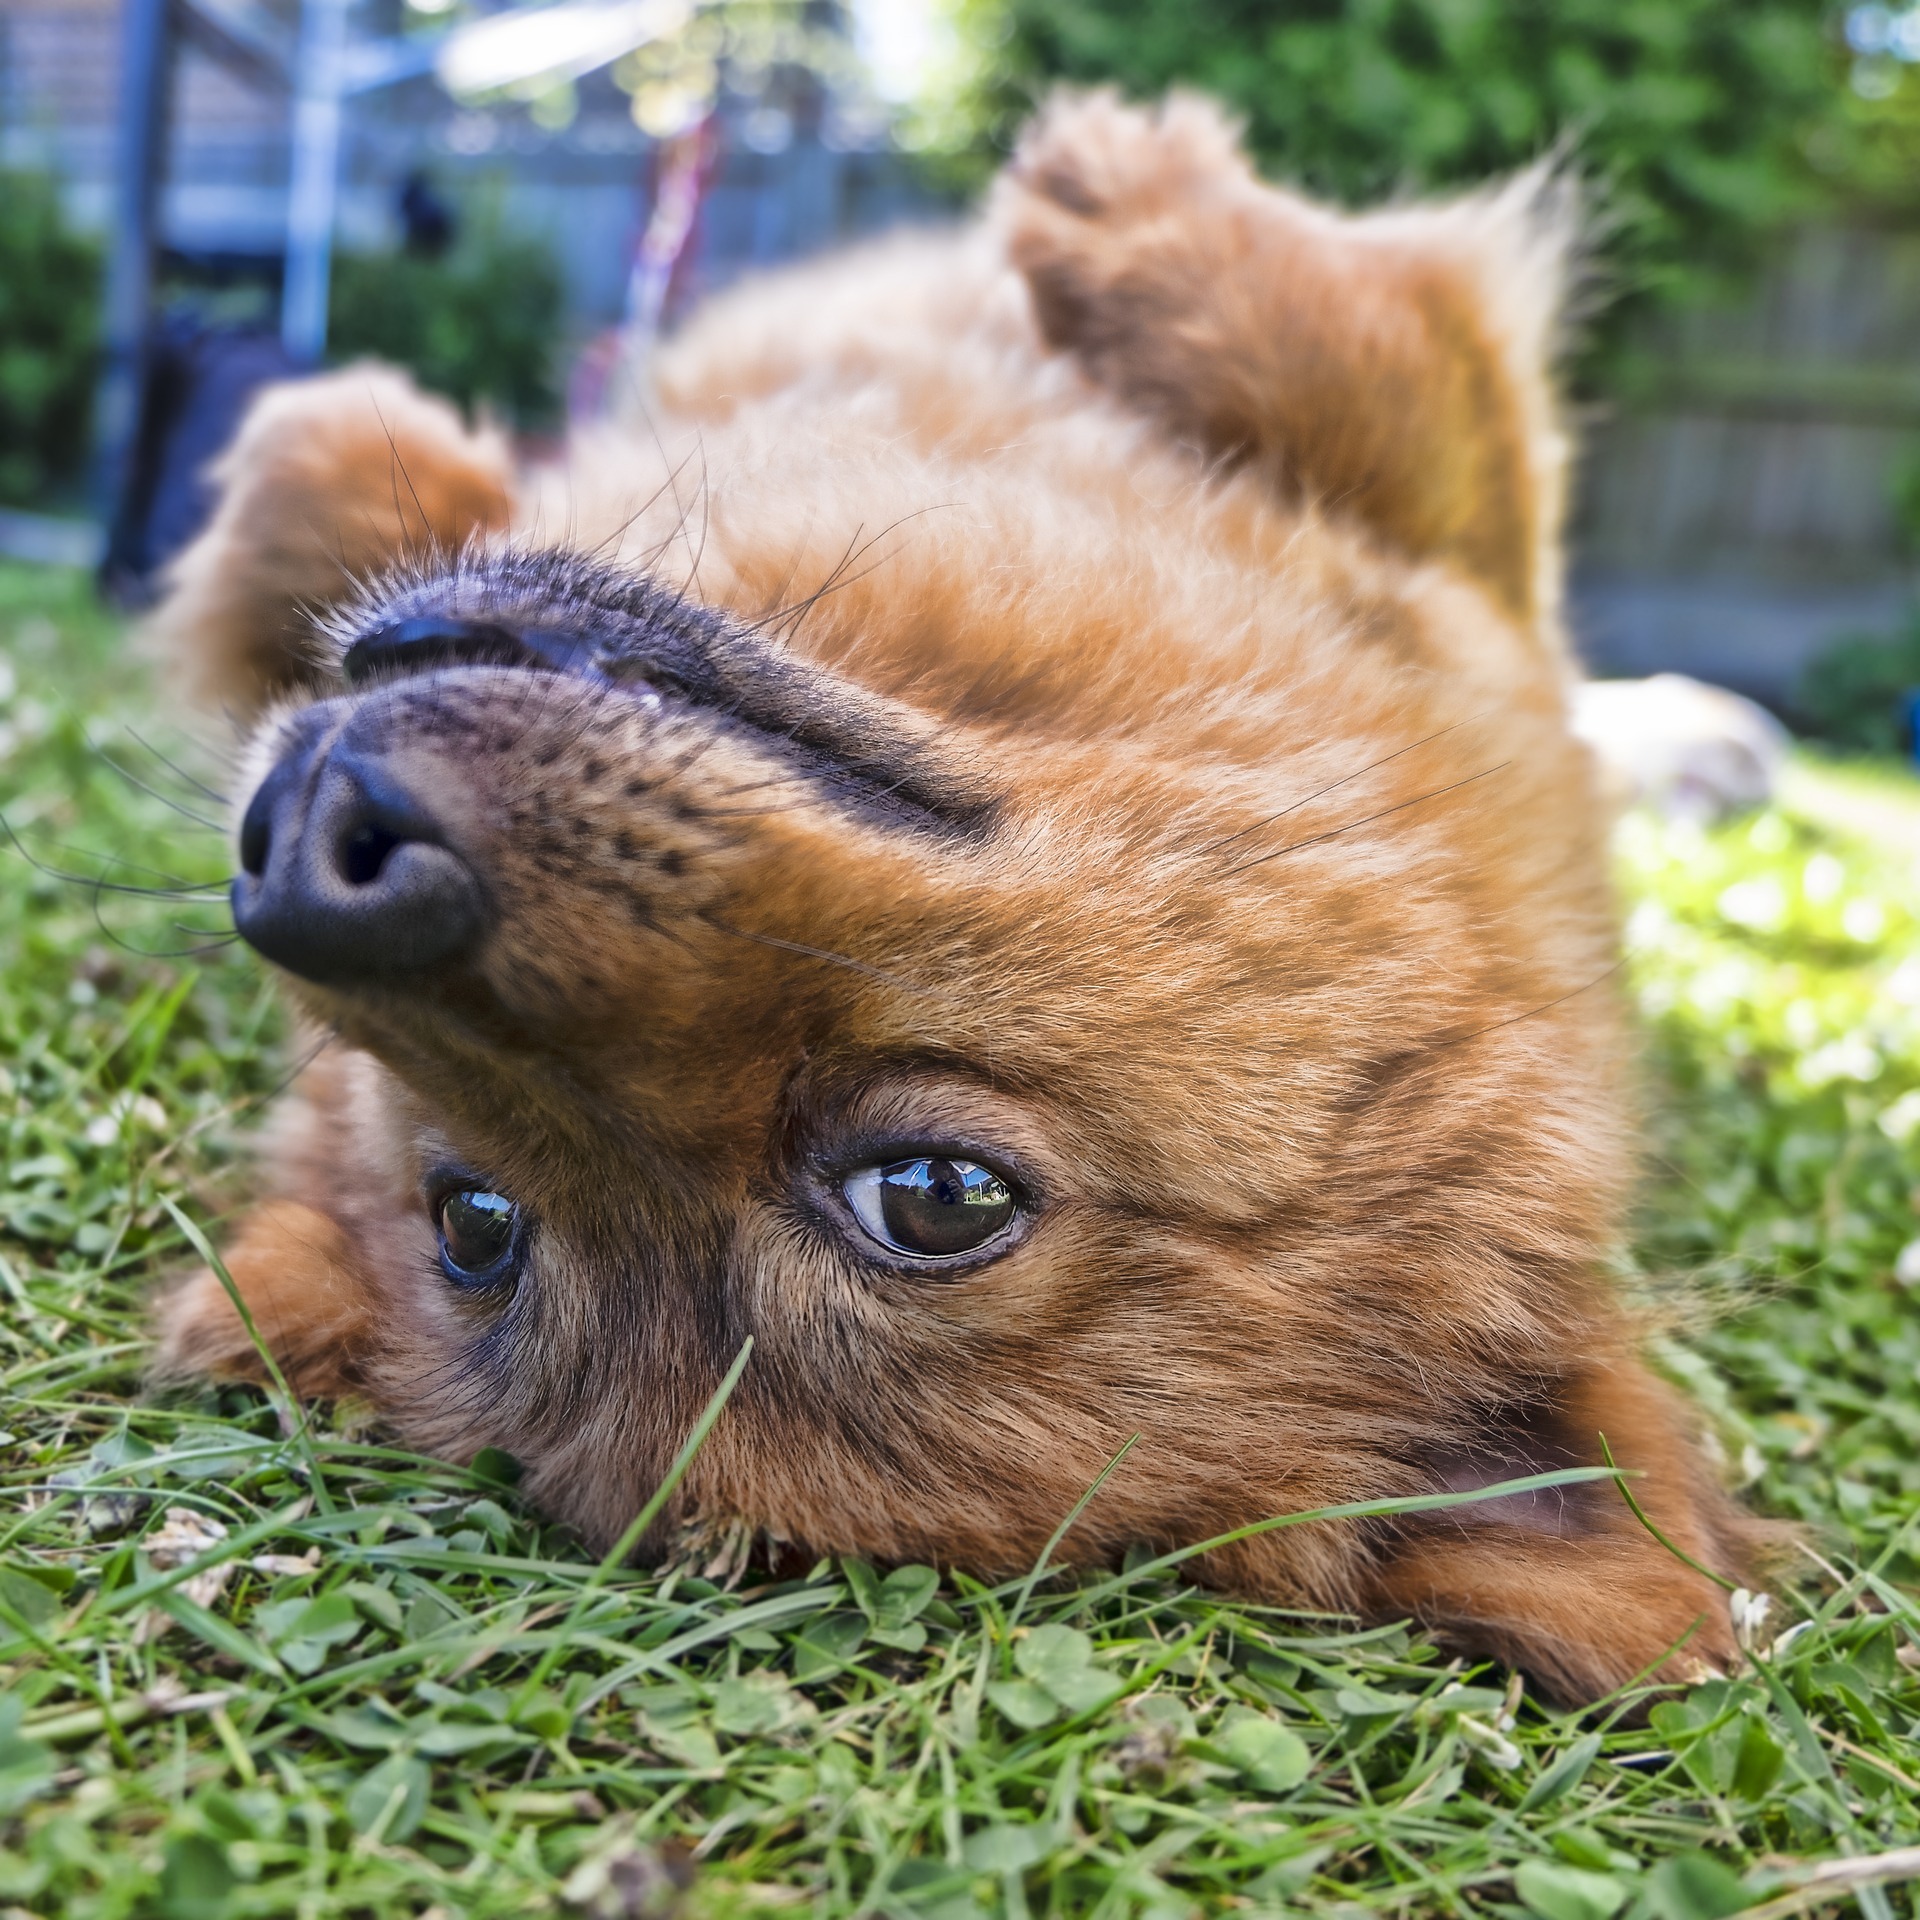 犬が芝生の上でゴロゴロするのには実は意味がある!?ポイントは”におい“にあった！